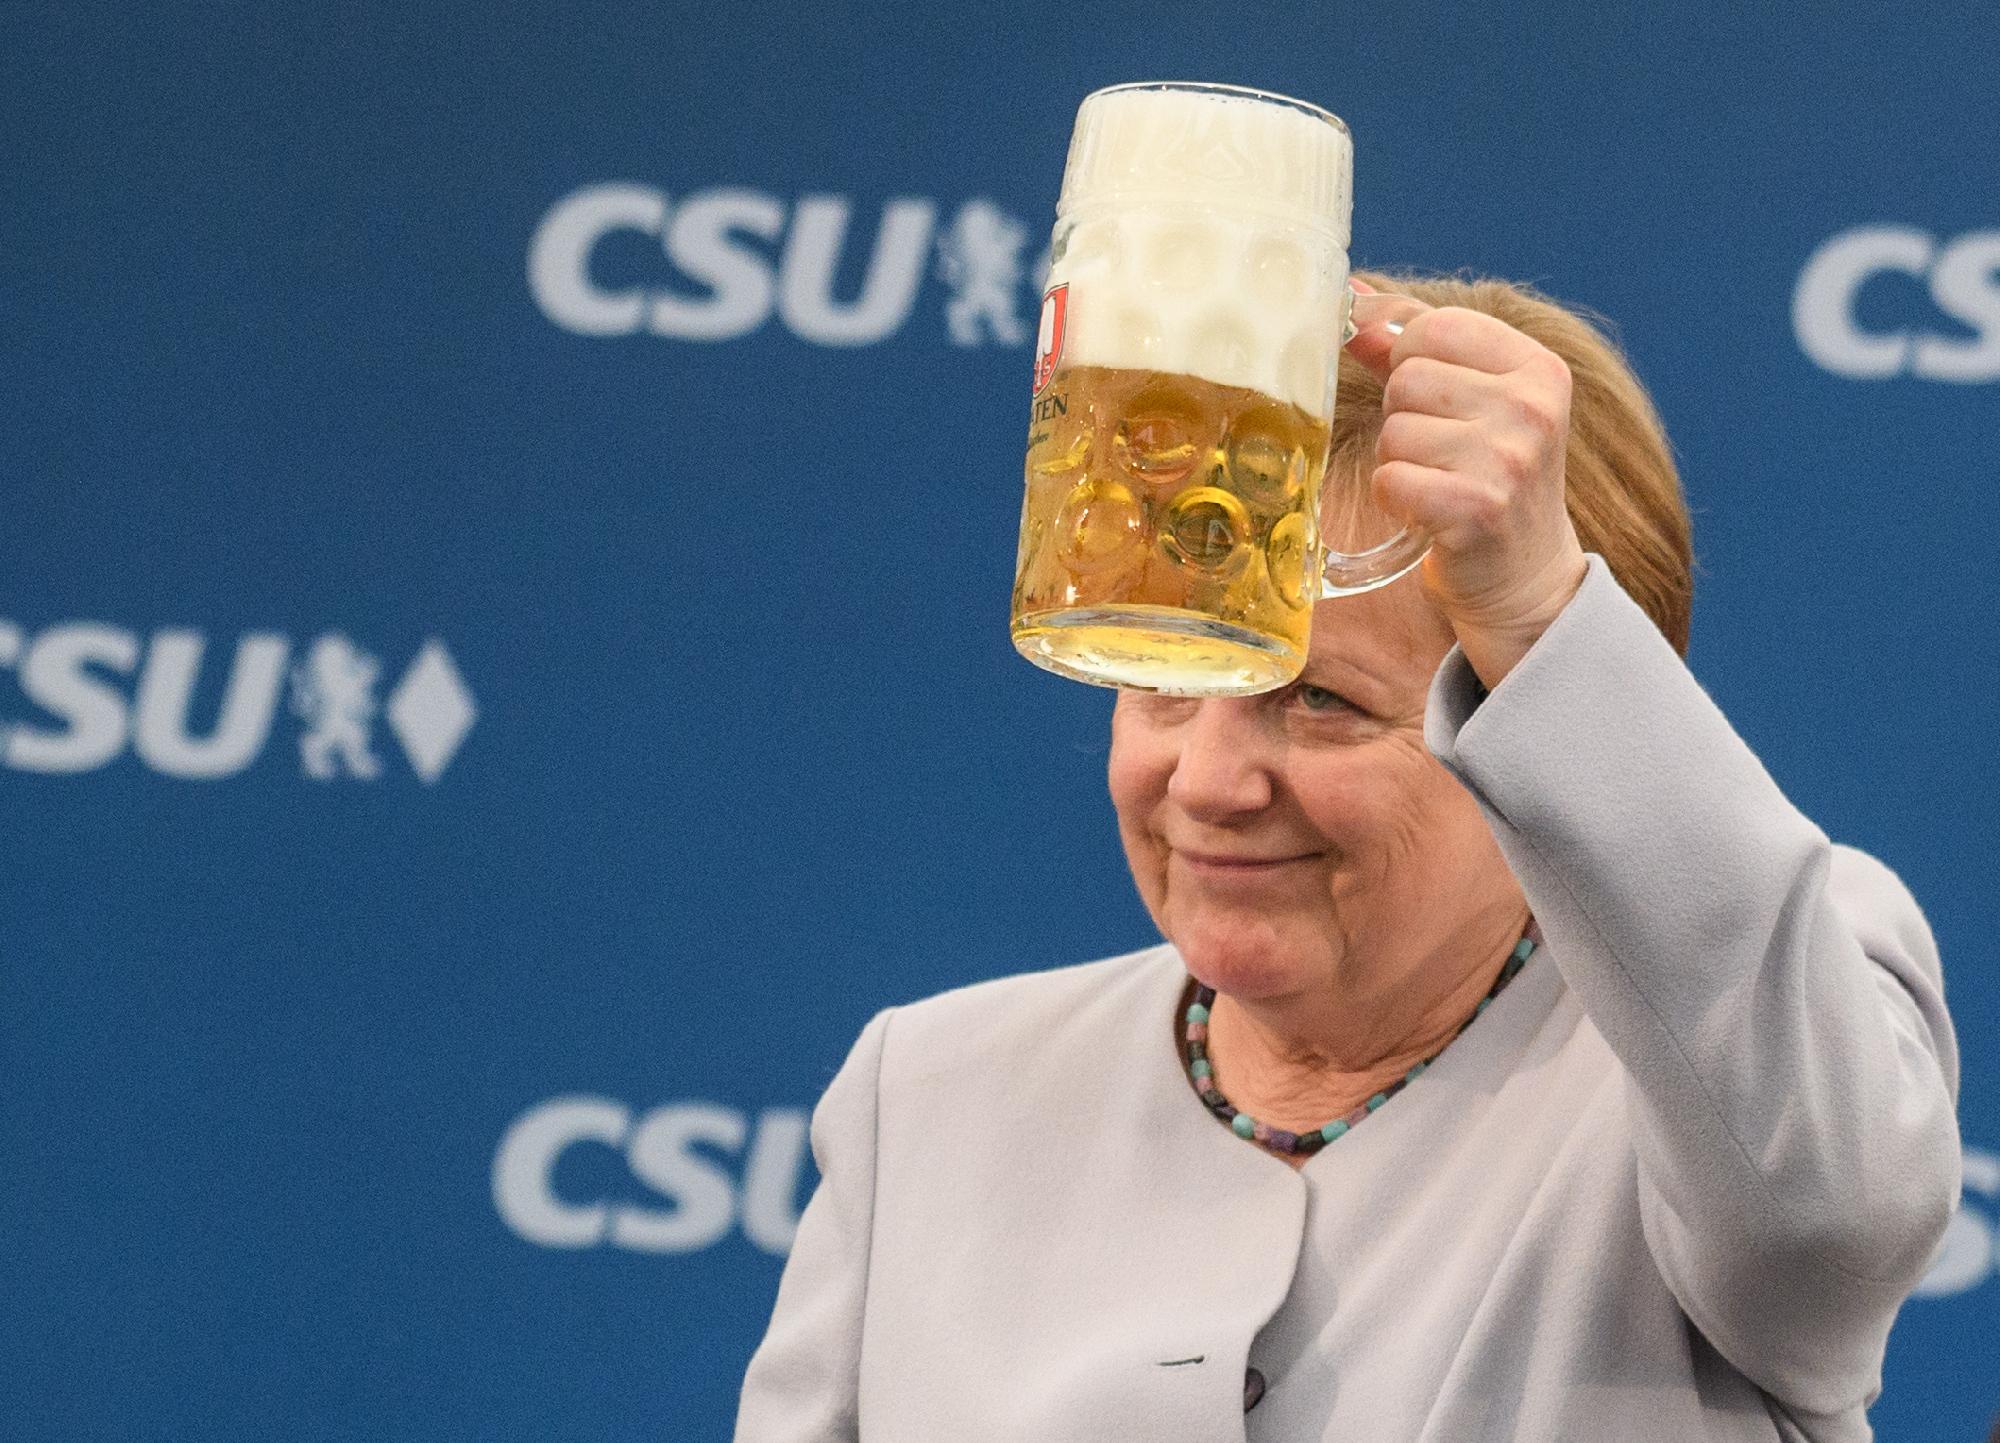 Angela Merkel ismét megerősítette, hogy kancellári munkája után visszavonul